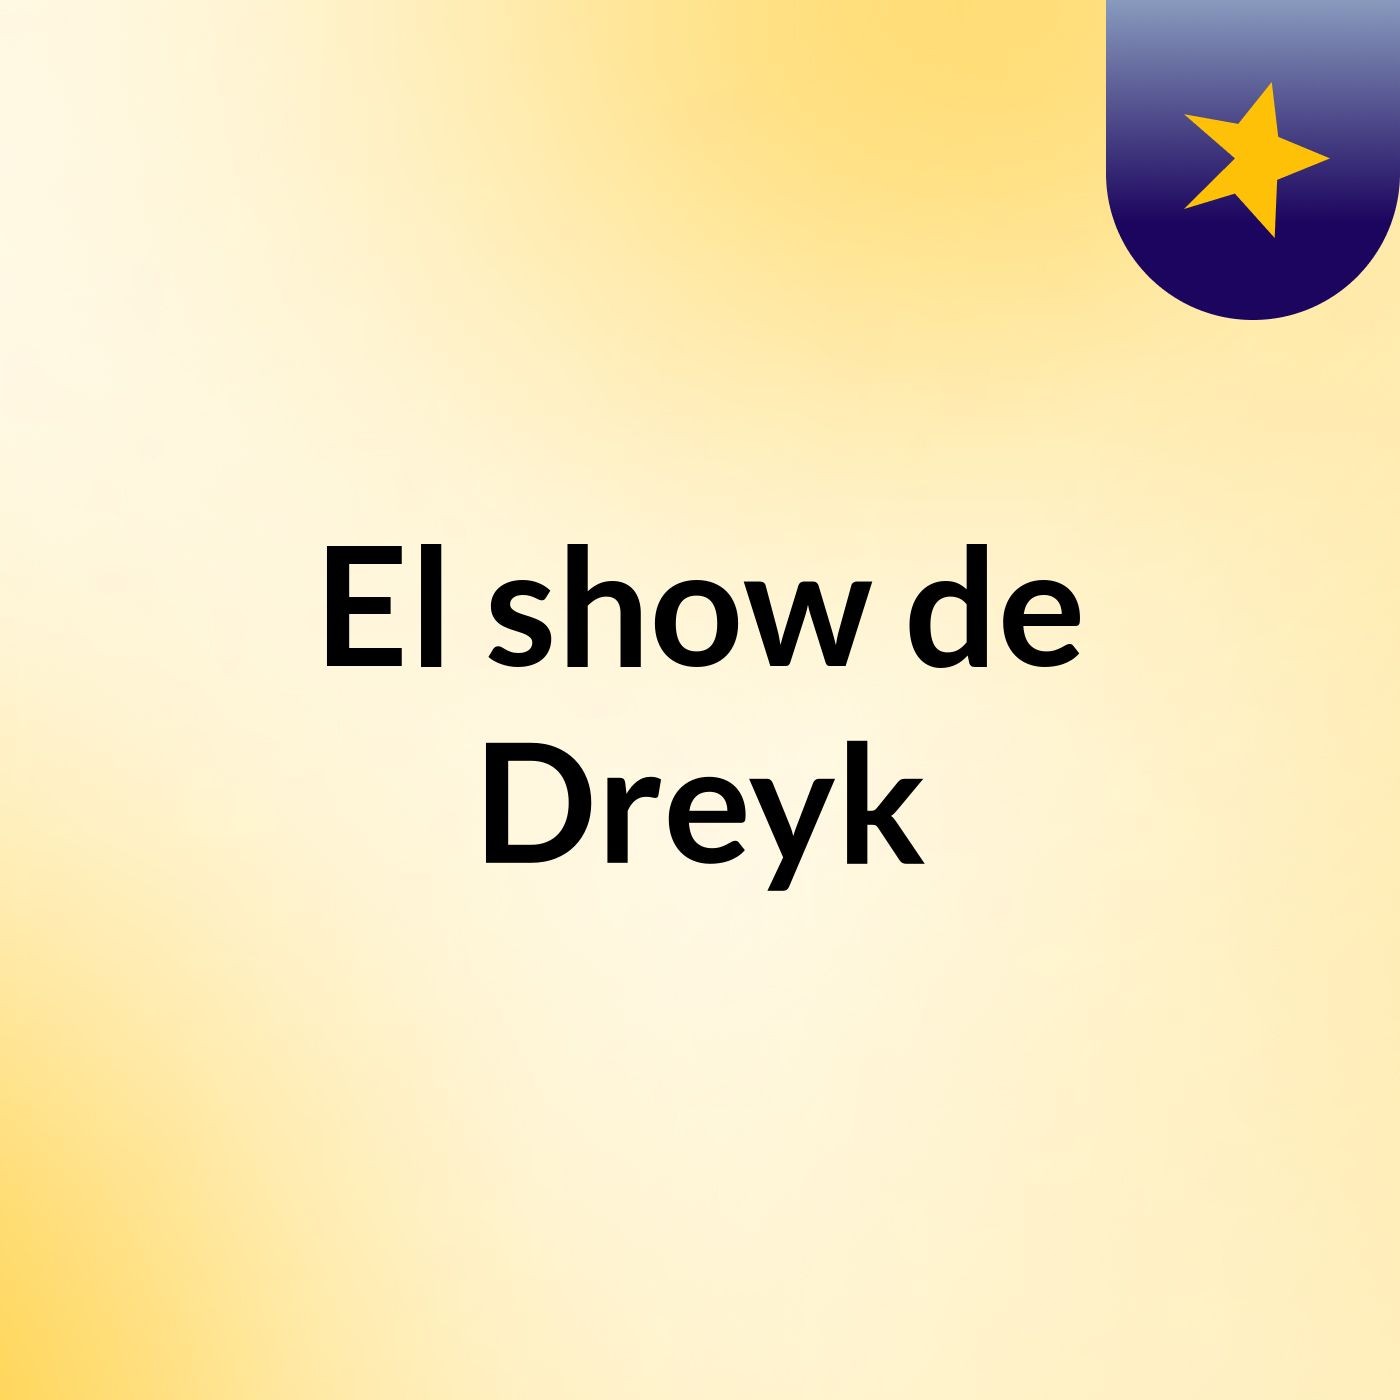 El show de Dreyk